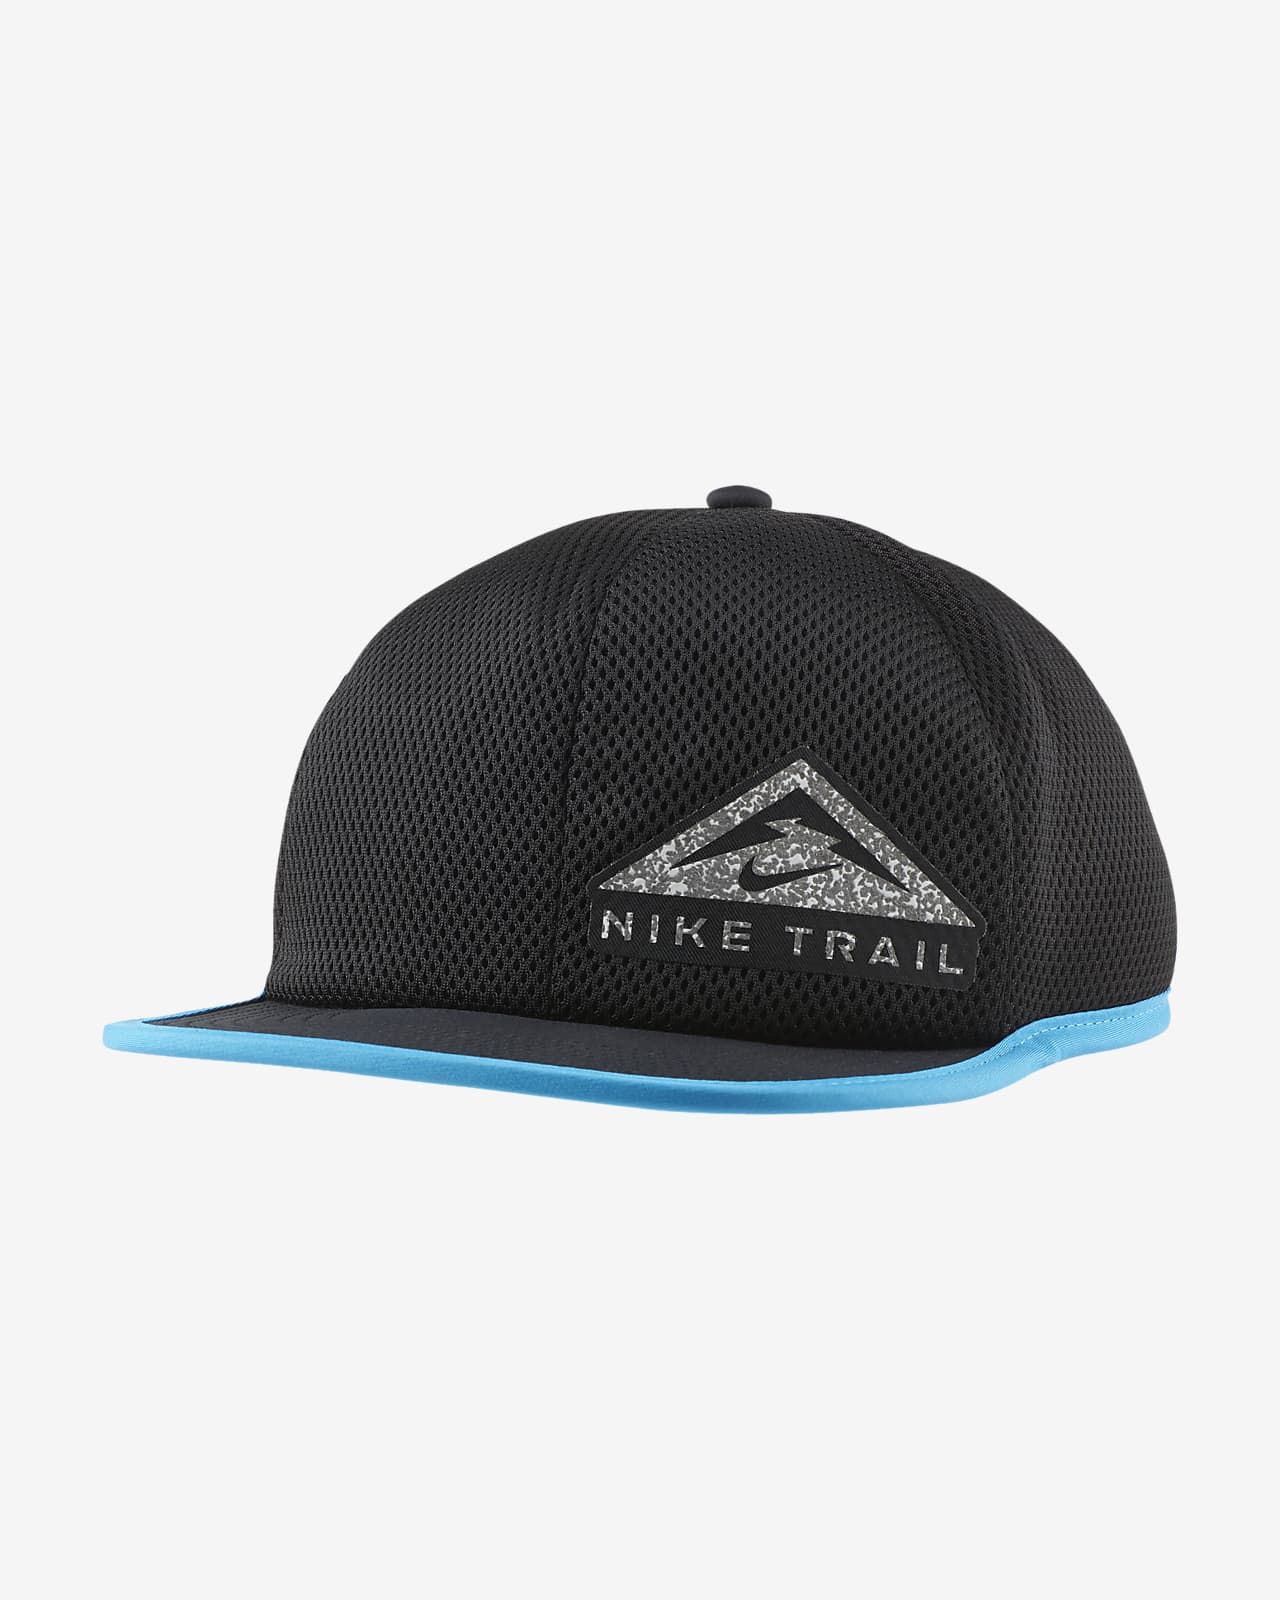 nike trail hat black